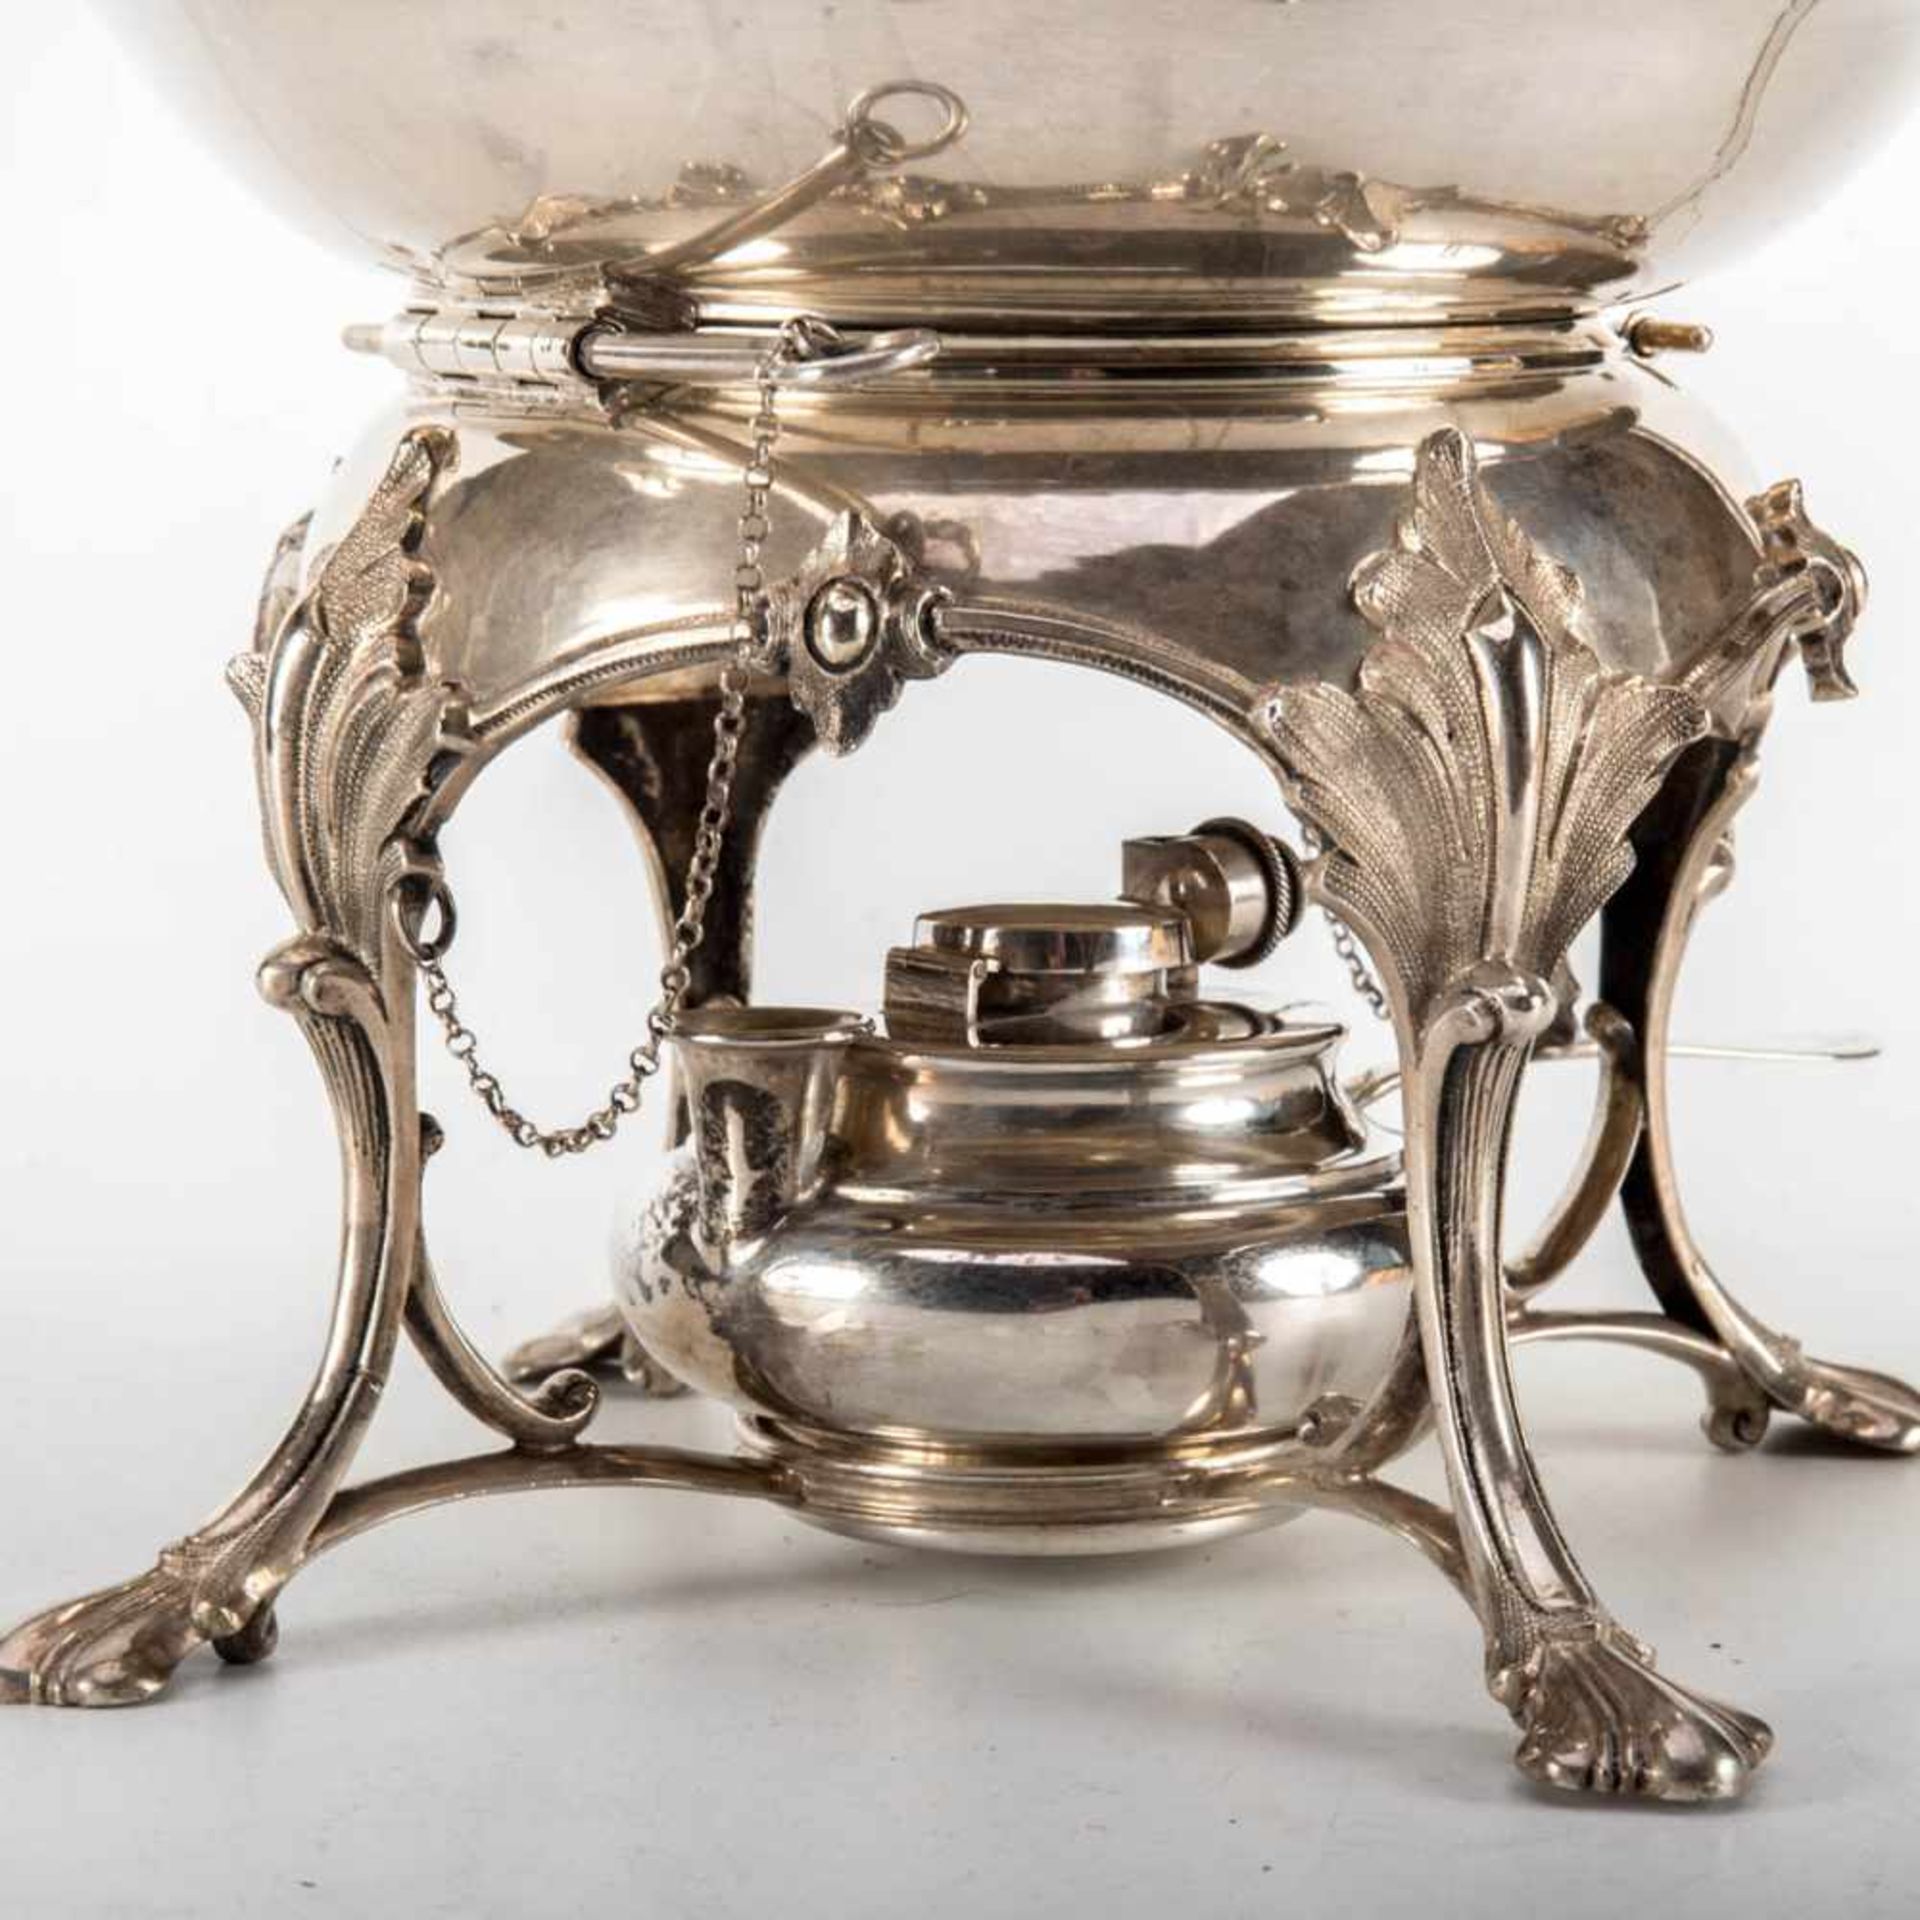 Teekanne mit Rechaud800er Silber, gedrückt bauchiger Korpus, umlaufend dekorativ gegliedert. Von - Bild 2 aus 3